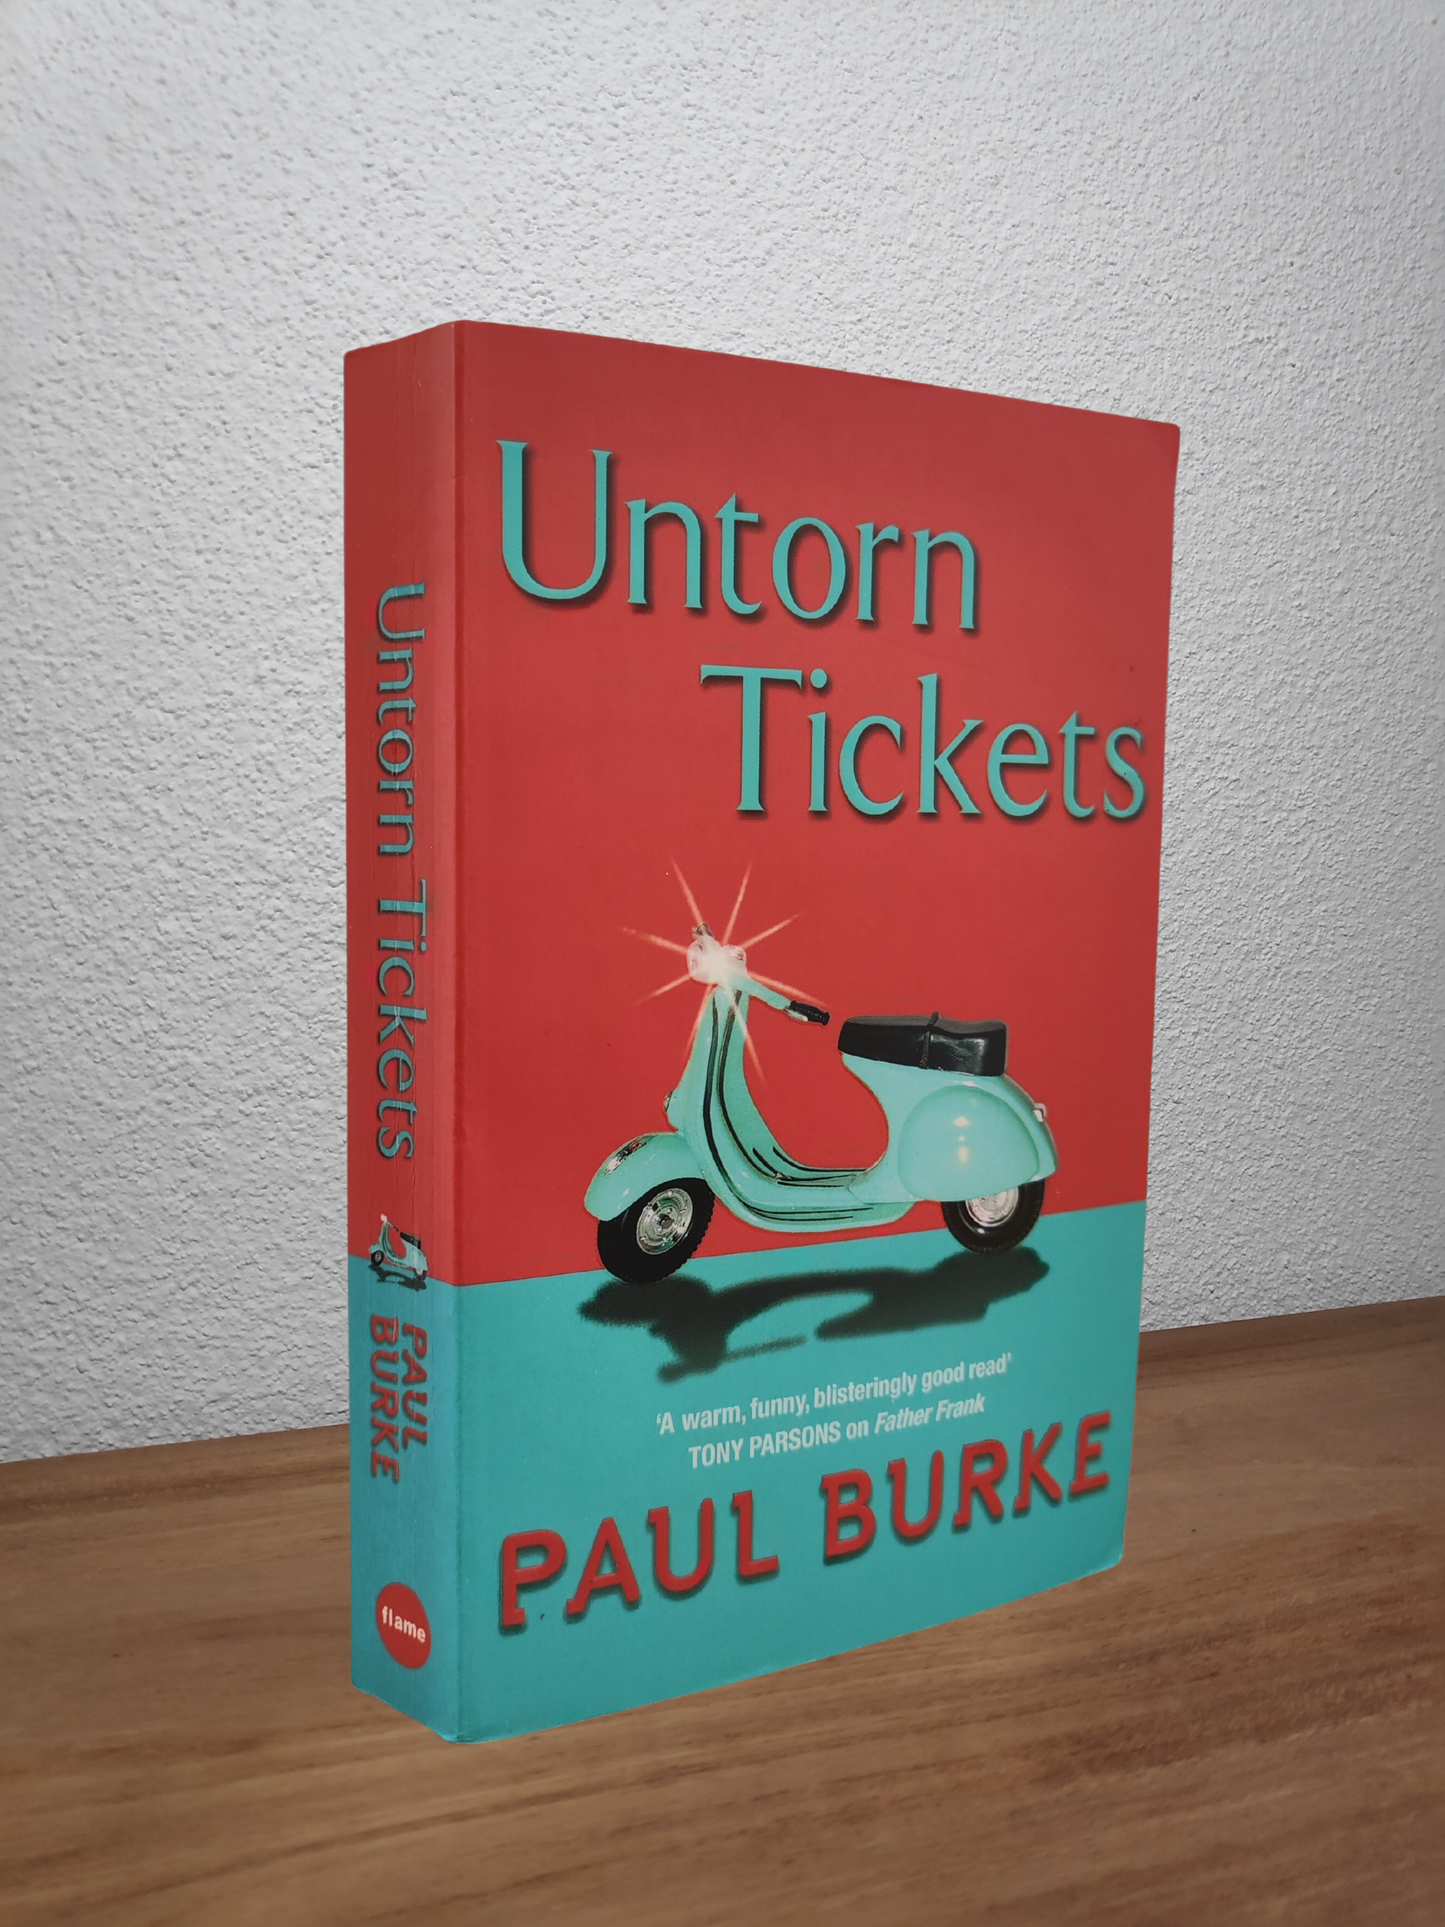 Paul Burke - Untorn Tickets